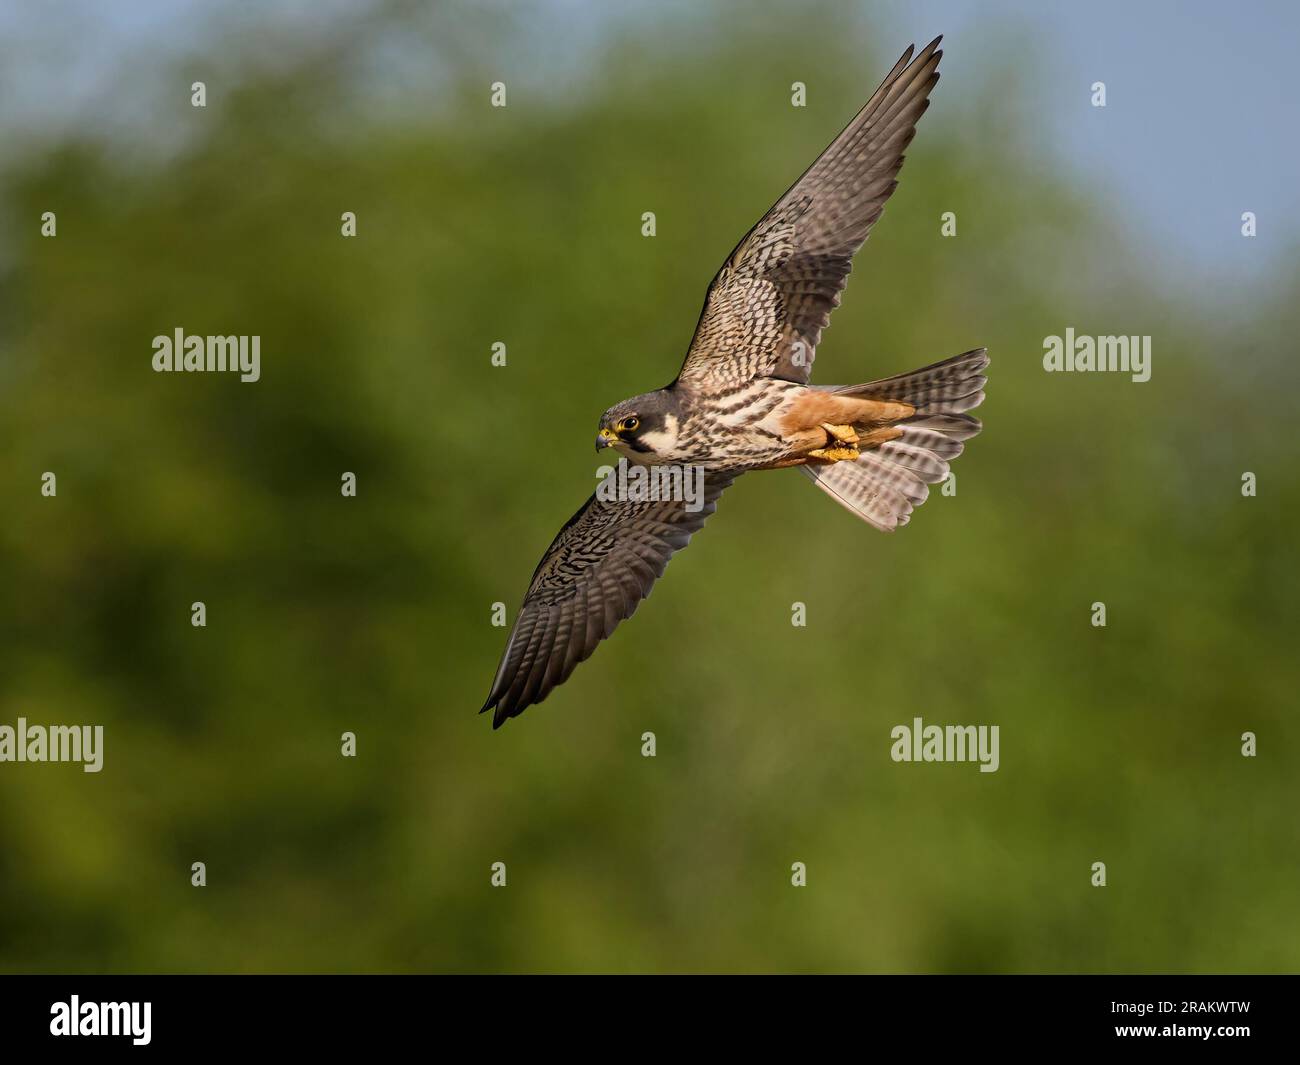 Eurasian hobby (Falco subbuteo) in its natural environment Stock Photo